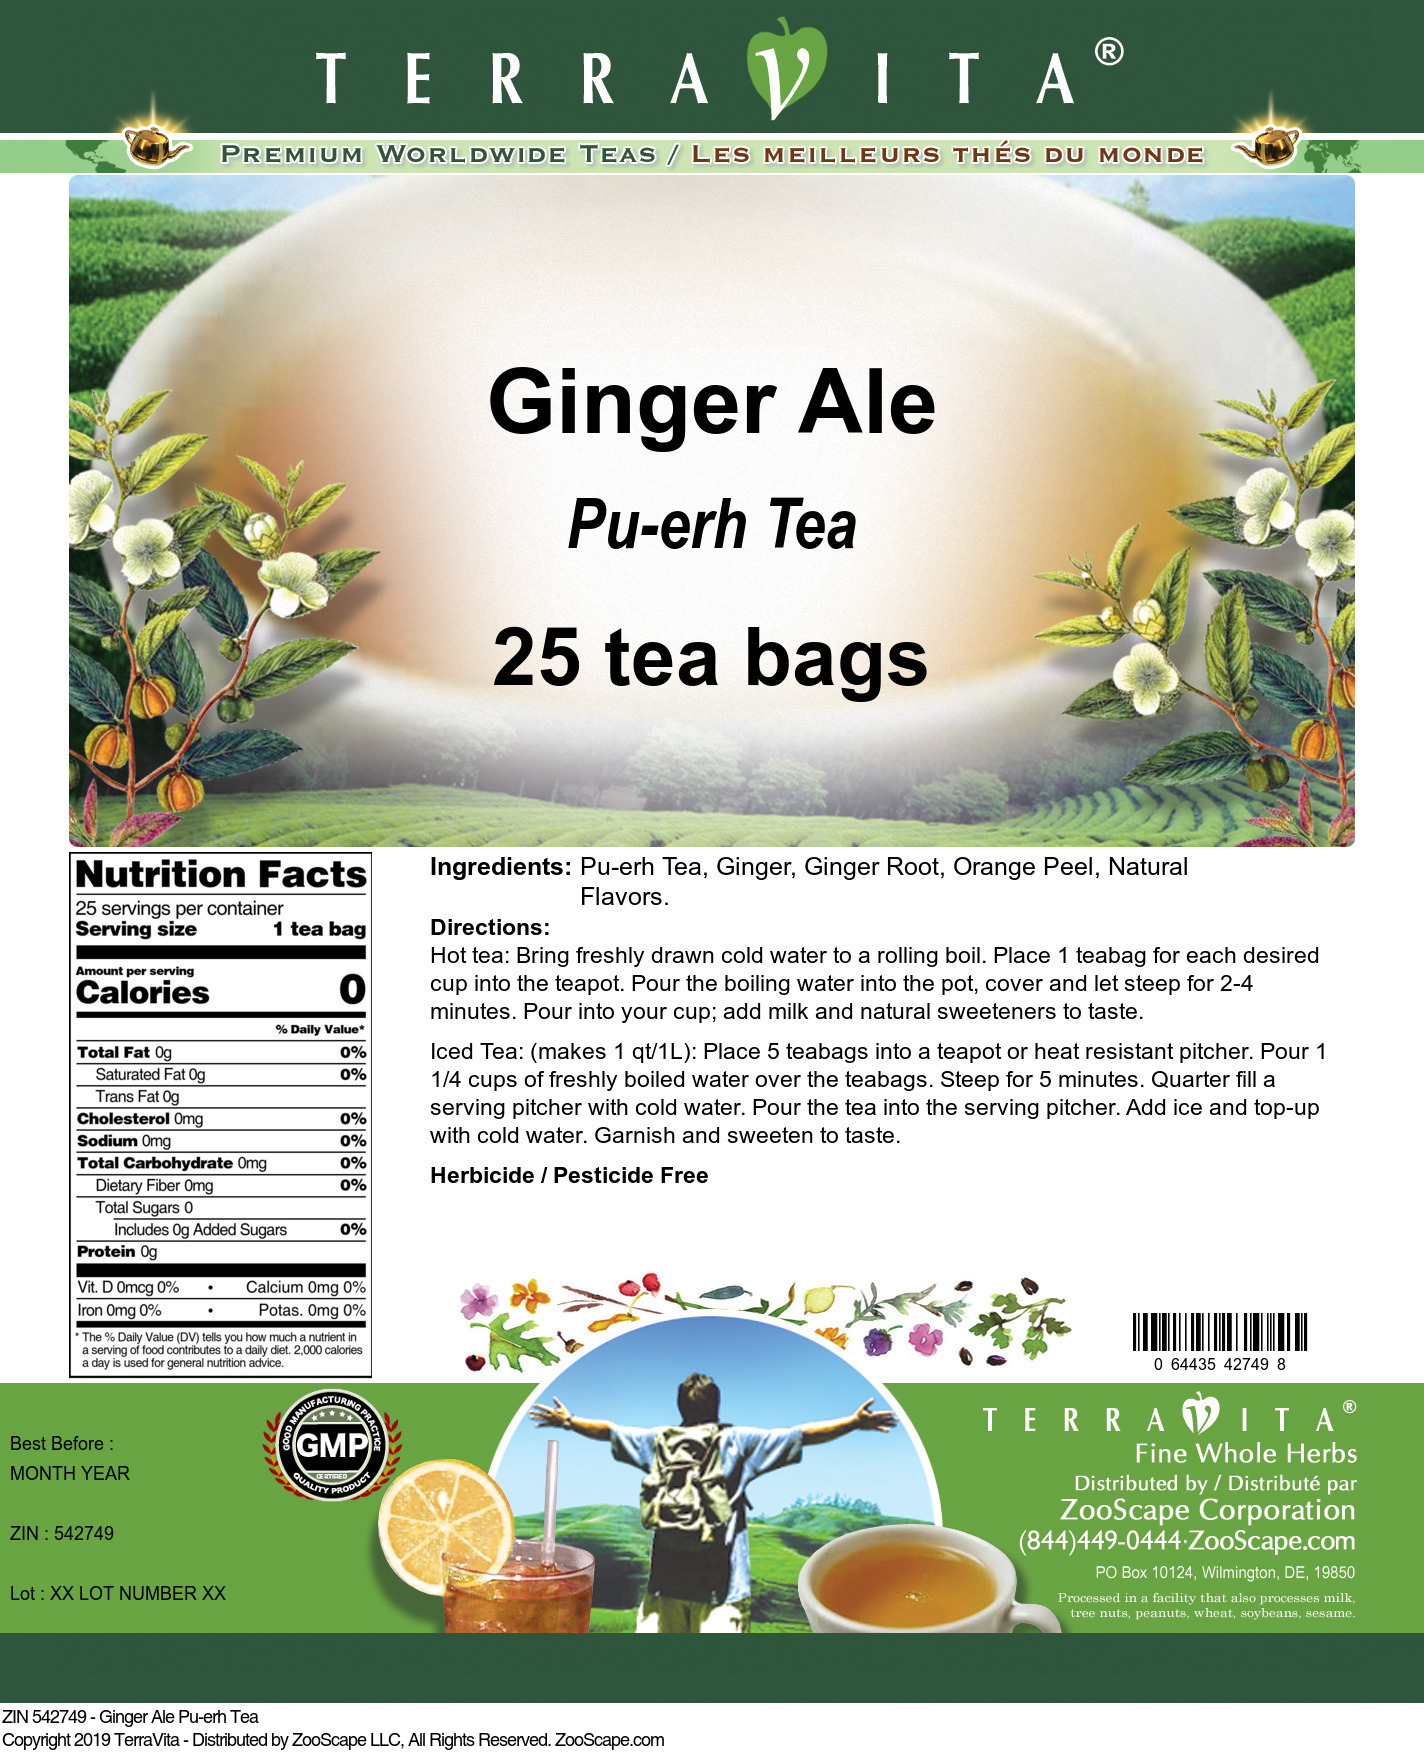 Ginger Ale Pu-erh Tea - Label